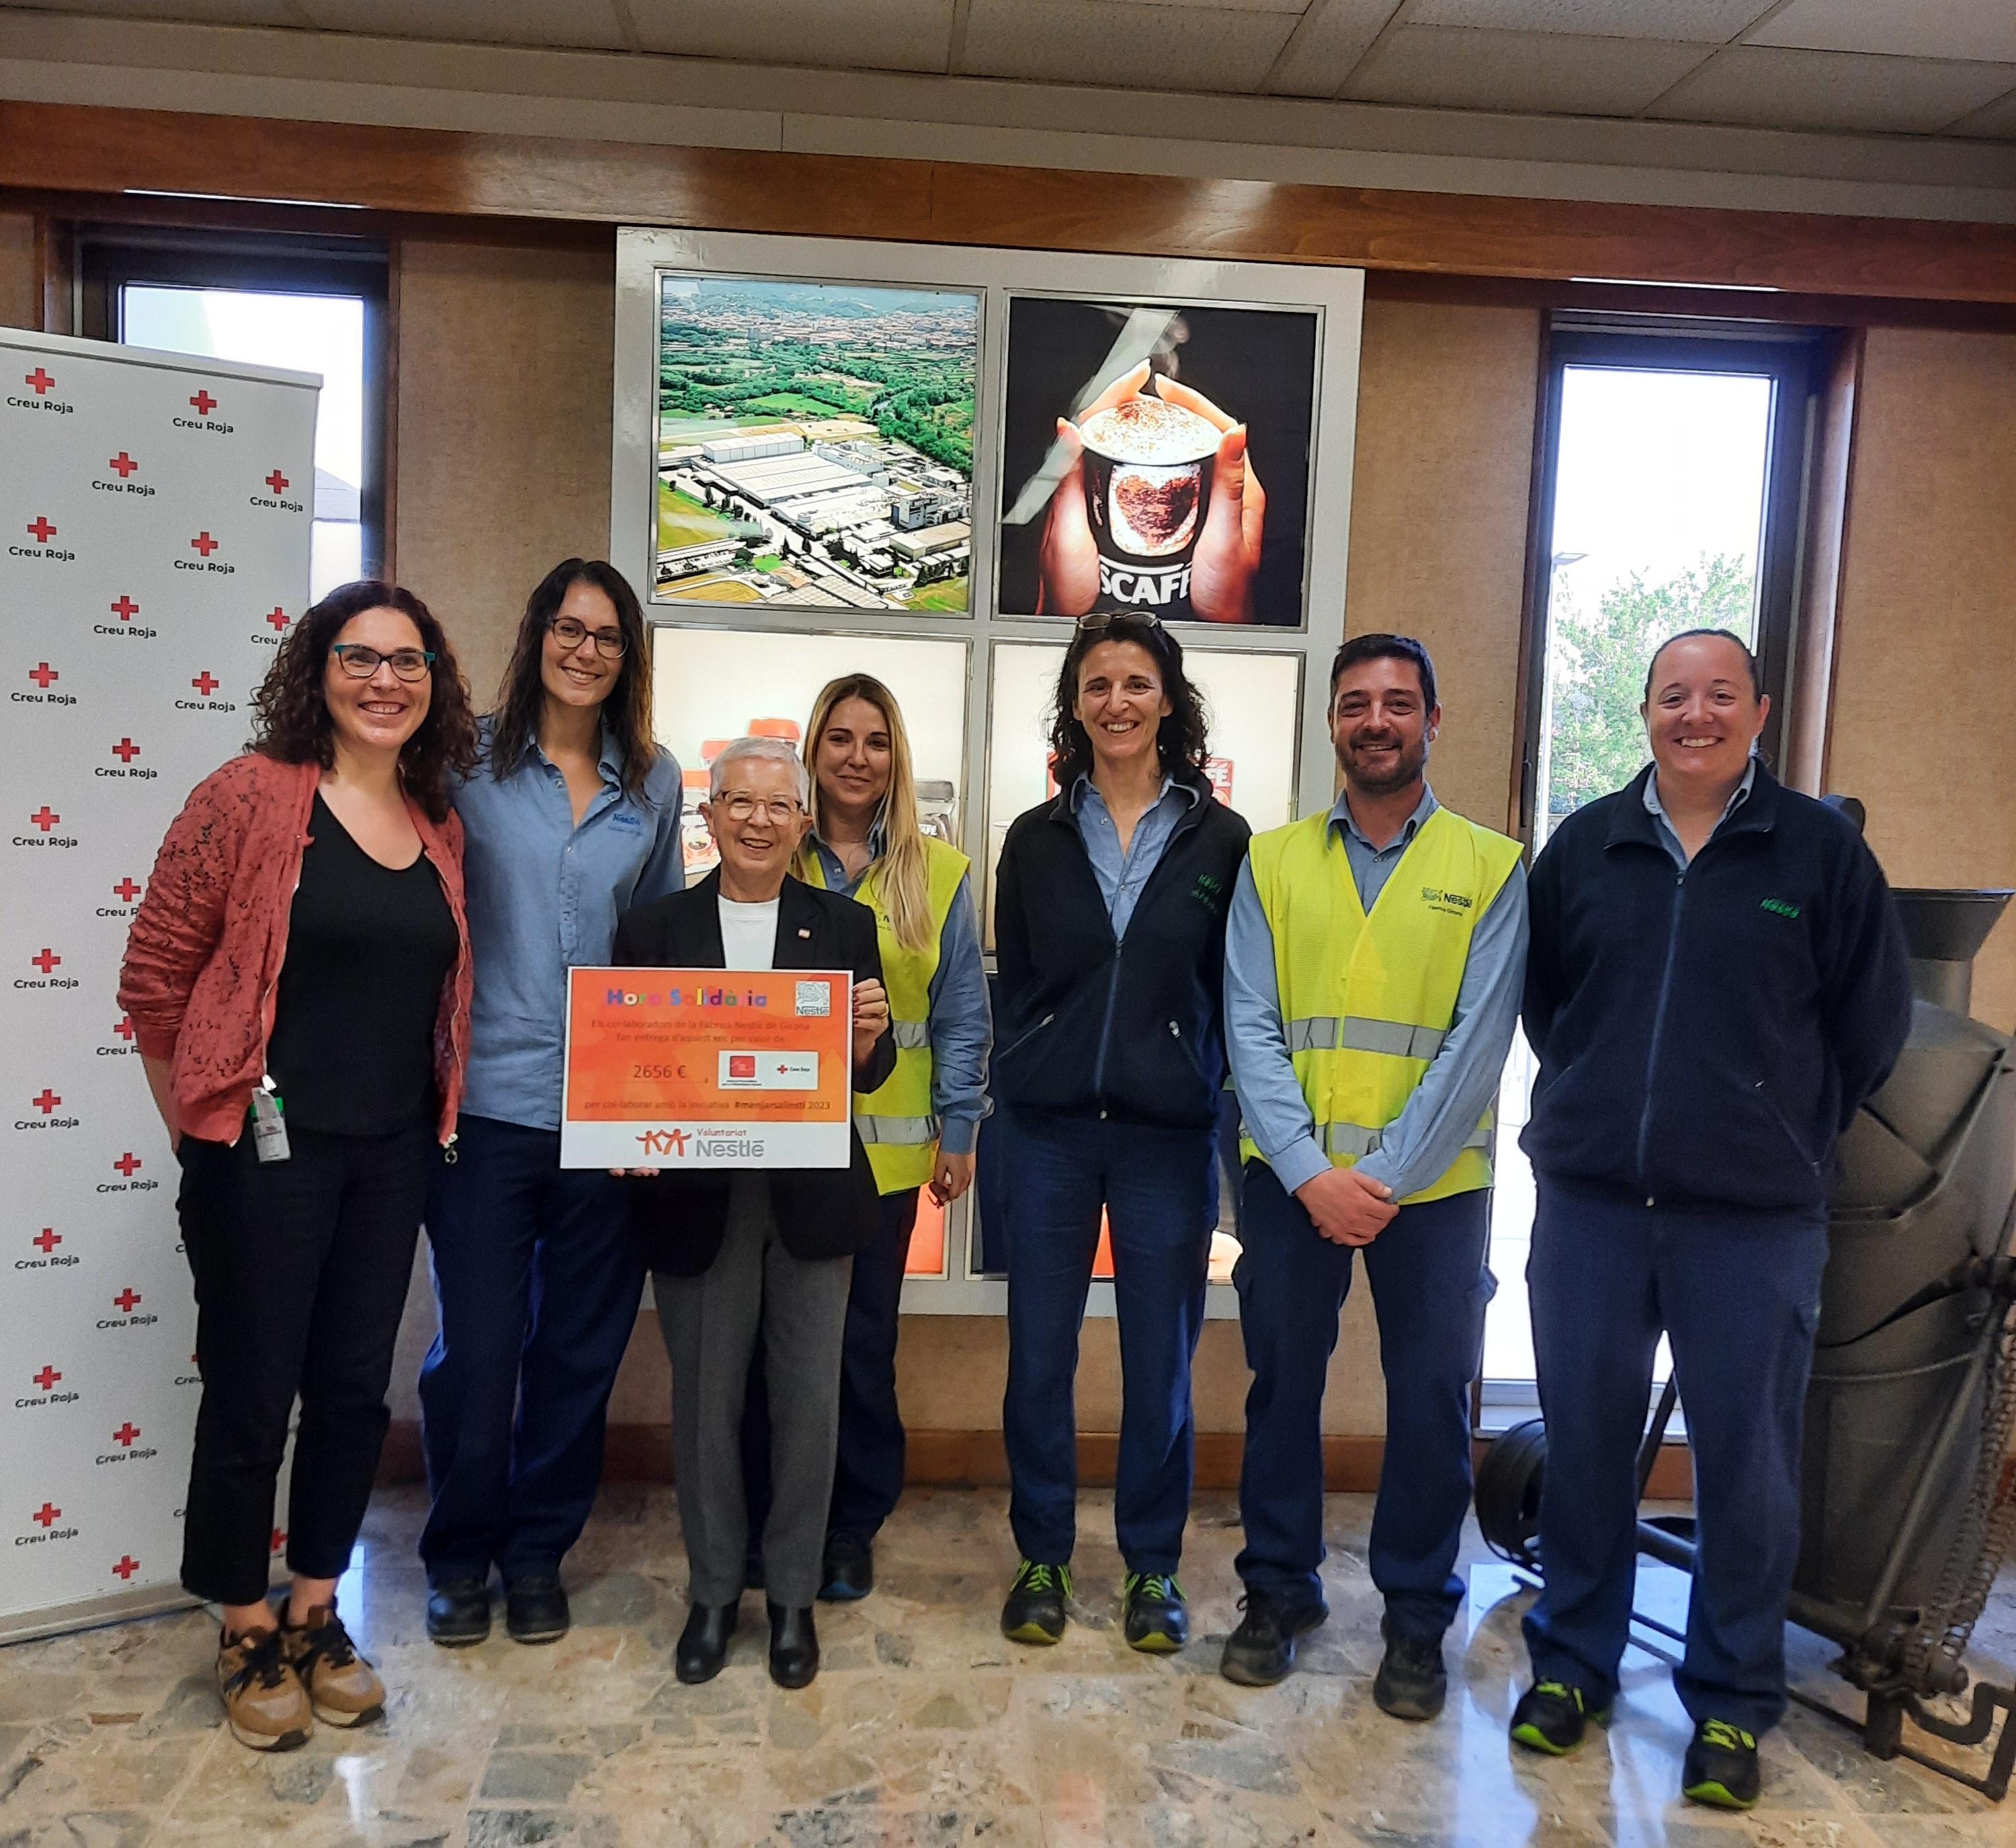 La fàbrica de Nestlé de Girona i la Creu Roja, juntes per oferir beques menjador a secundària